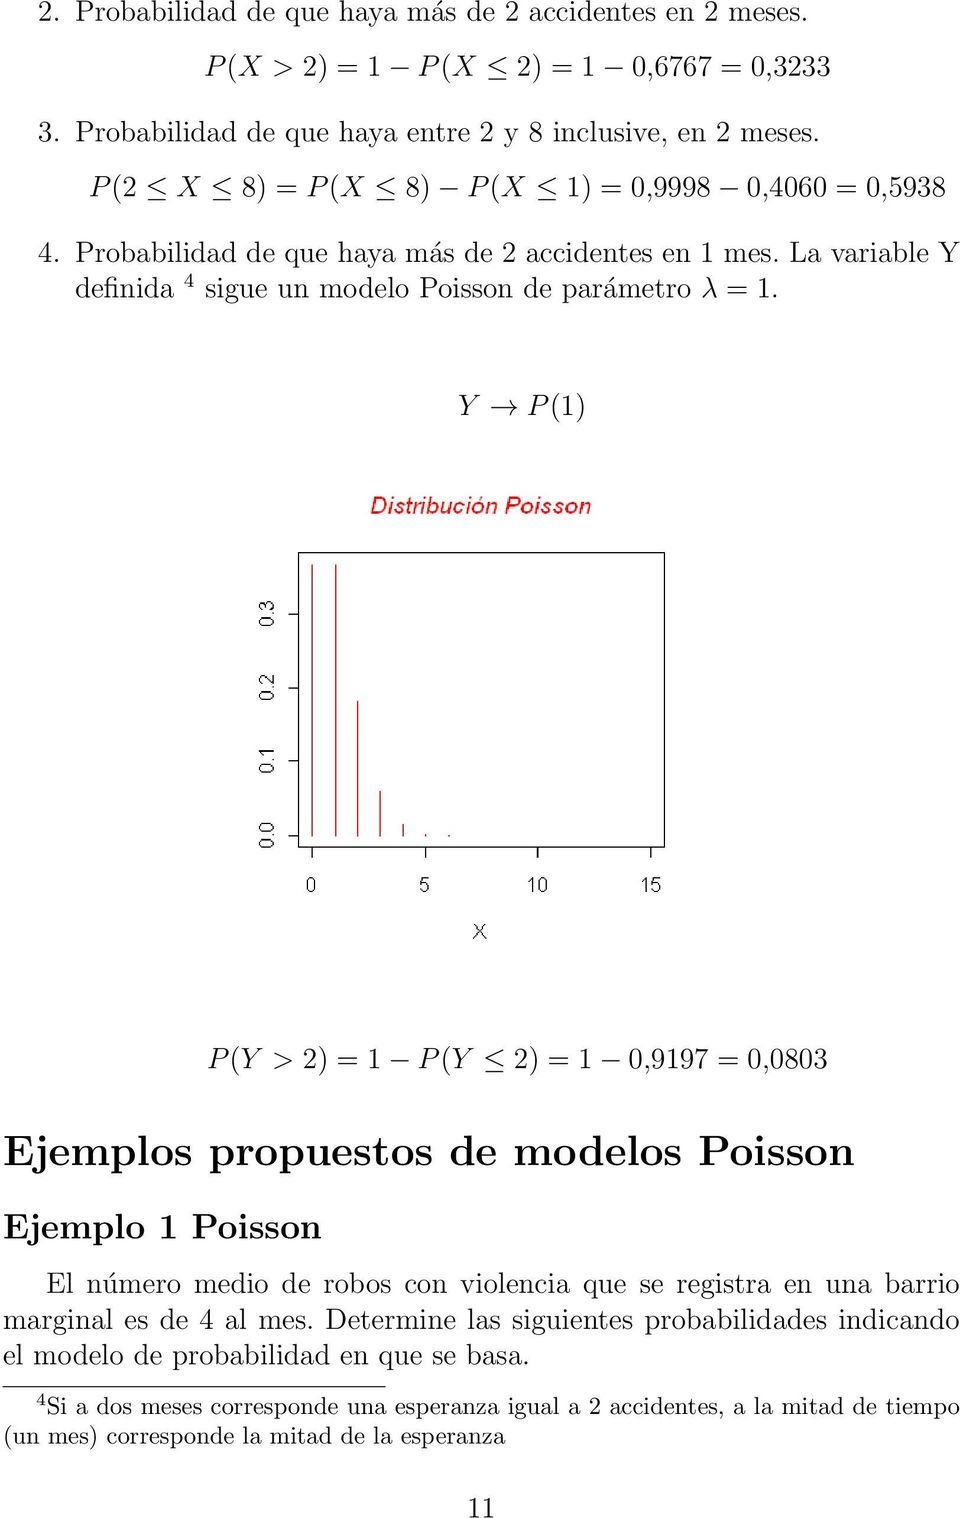 Y P (1) P (Y > 2) = 1 P (Y 2) = 1 0,9197 = 0,0803 Ejemplos propuestos de modelos Poisson Ejemplo 1 Poisson El número medio de robos con violencia que se registra en una barrio marginal es de 4